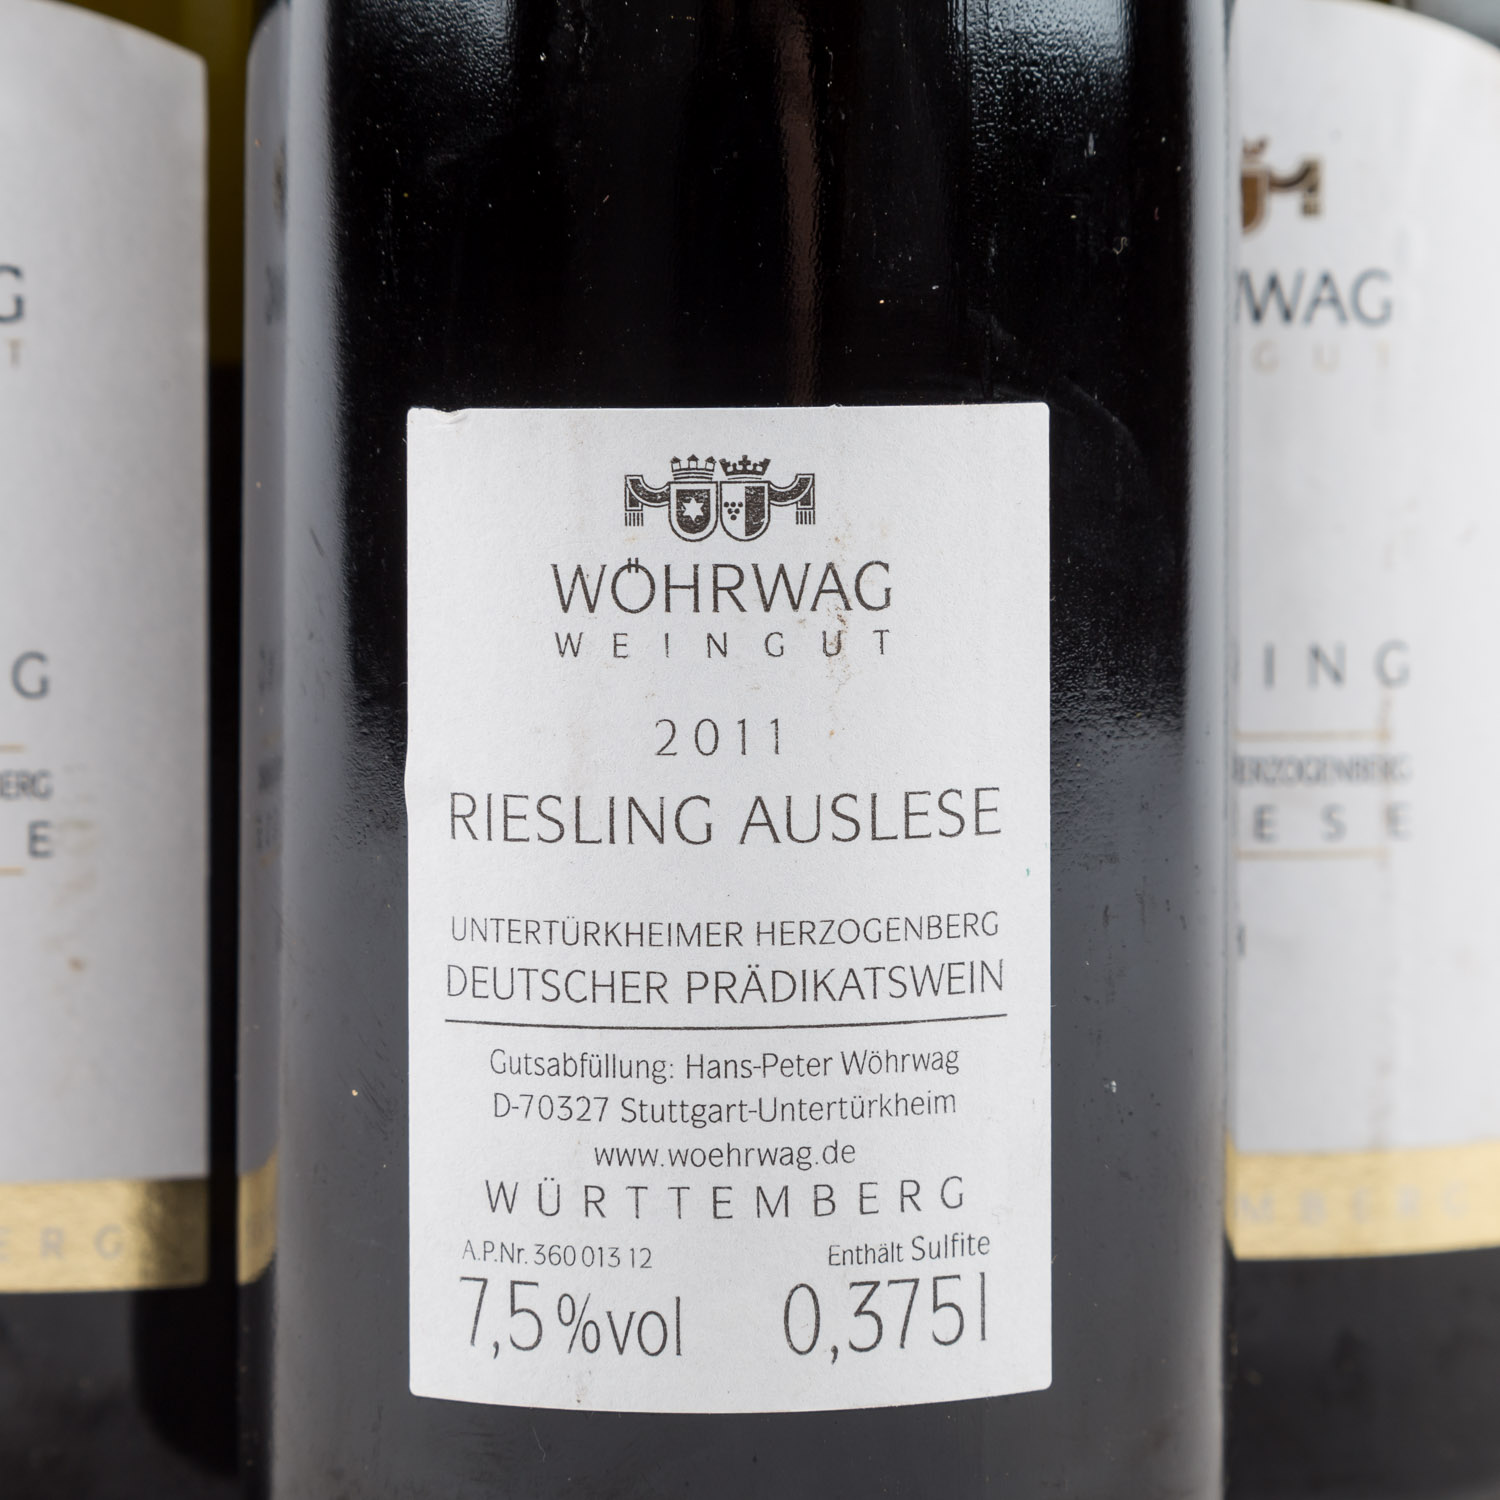 WEINGUT WÖHRWAG 4 Flaschen "Untertürkheimer Herzogenberg Auslese" 2011 - Image 4 of 5